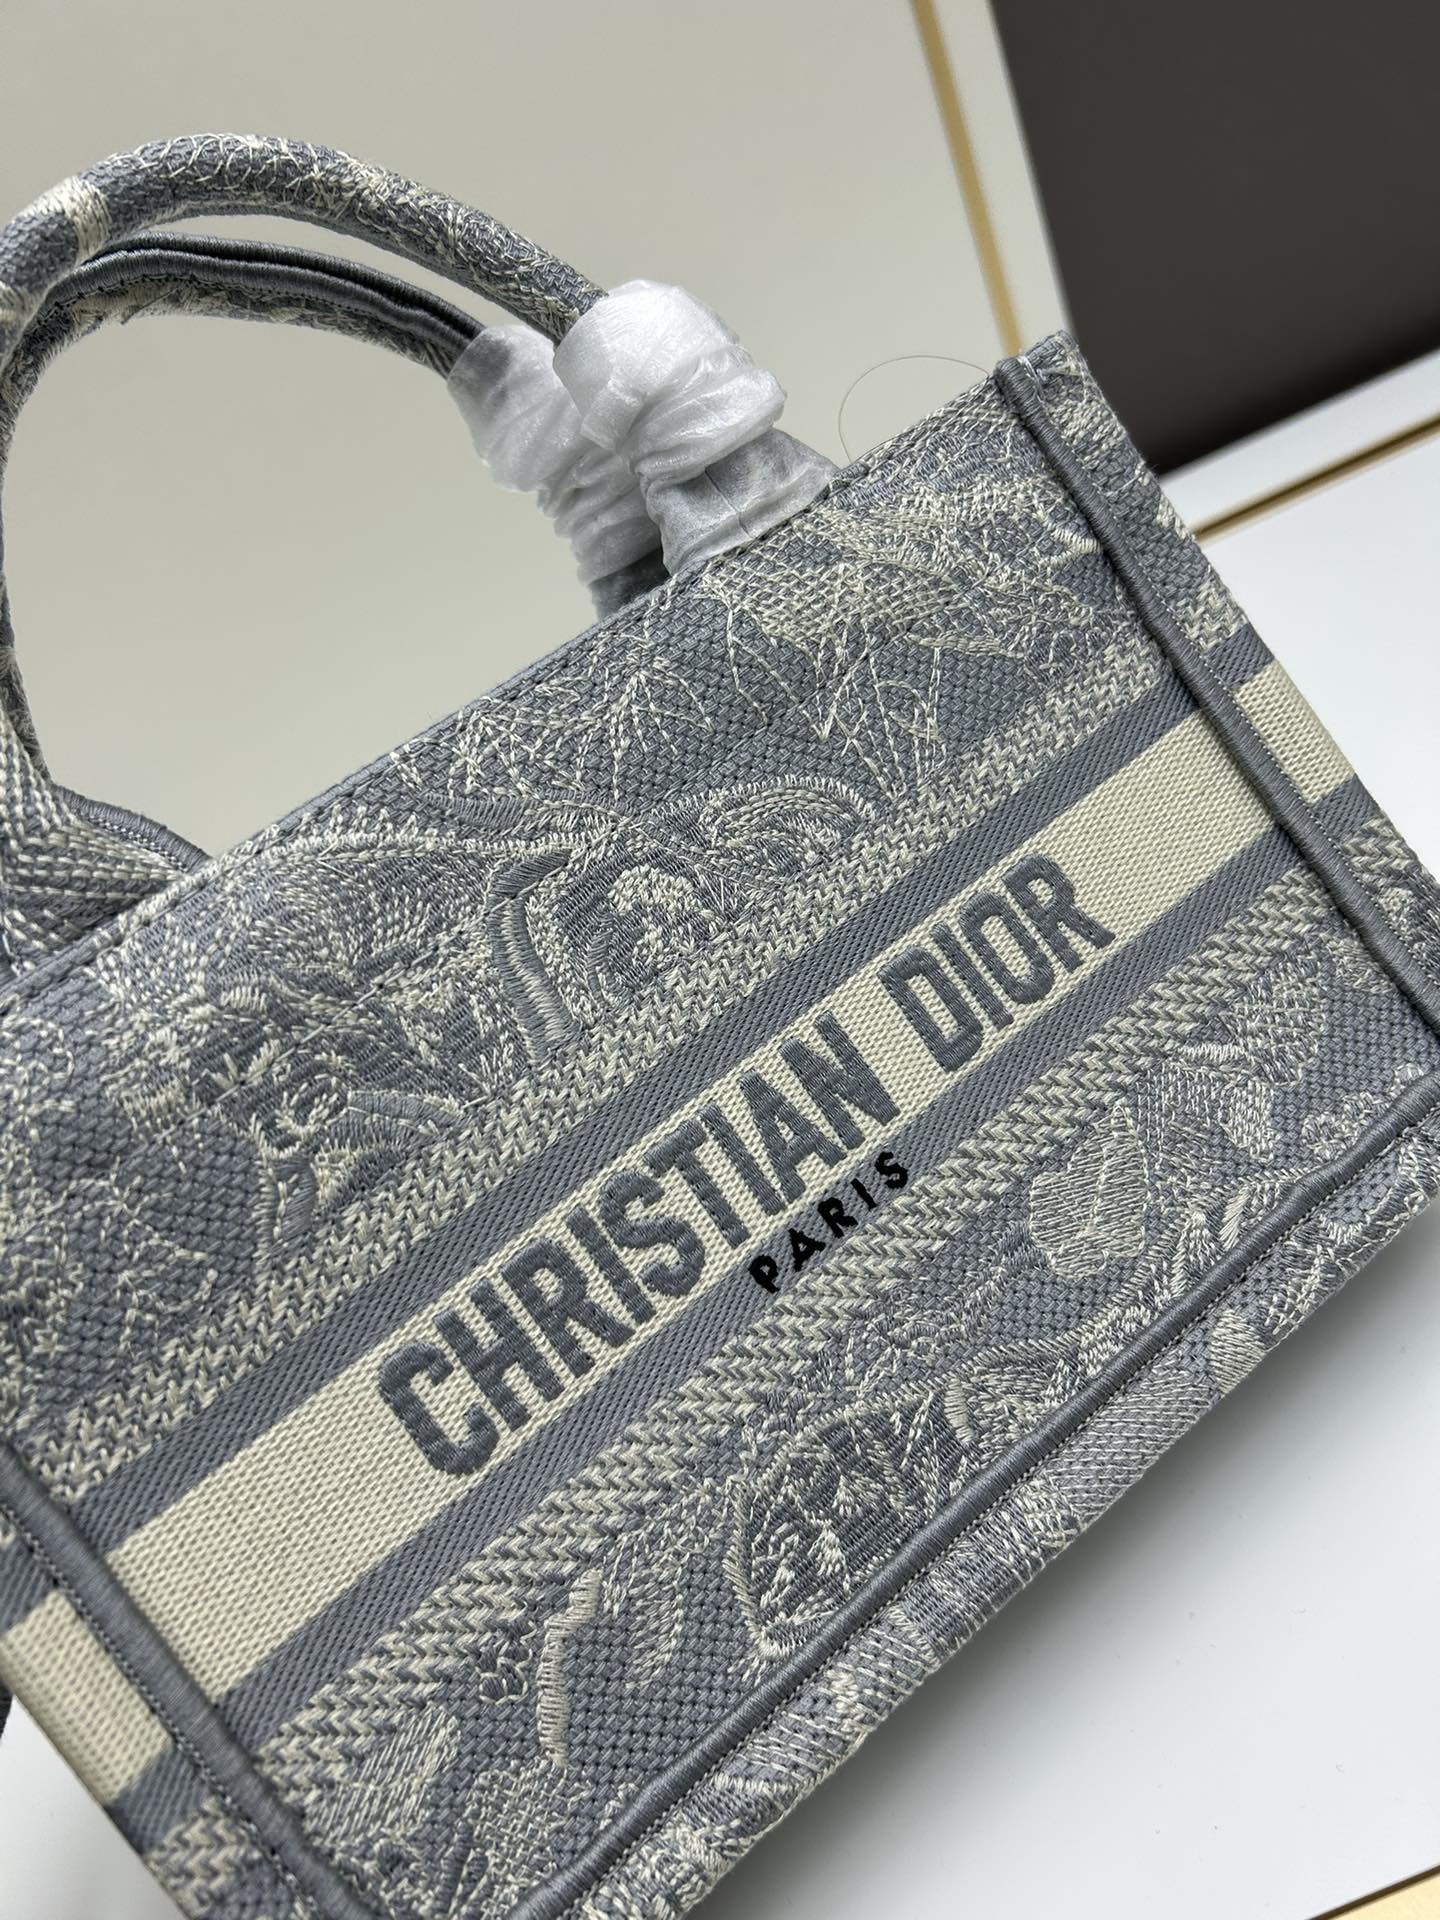 Replica Dior Paris logo Dior Book Tote handbag